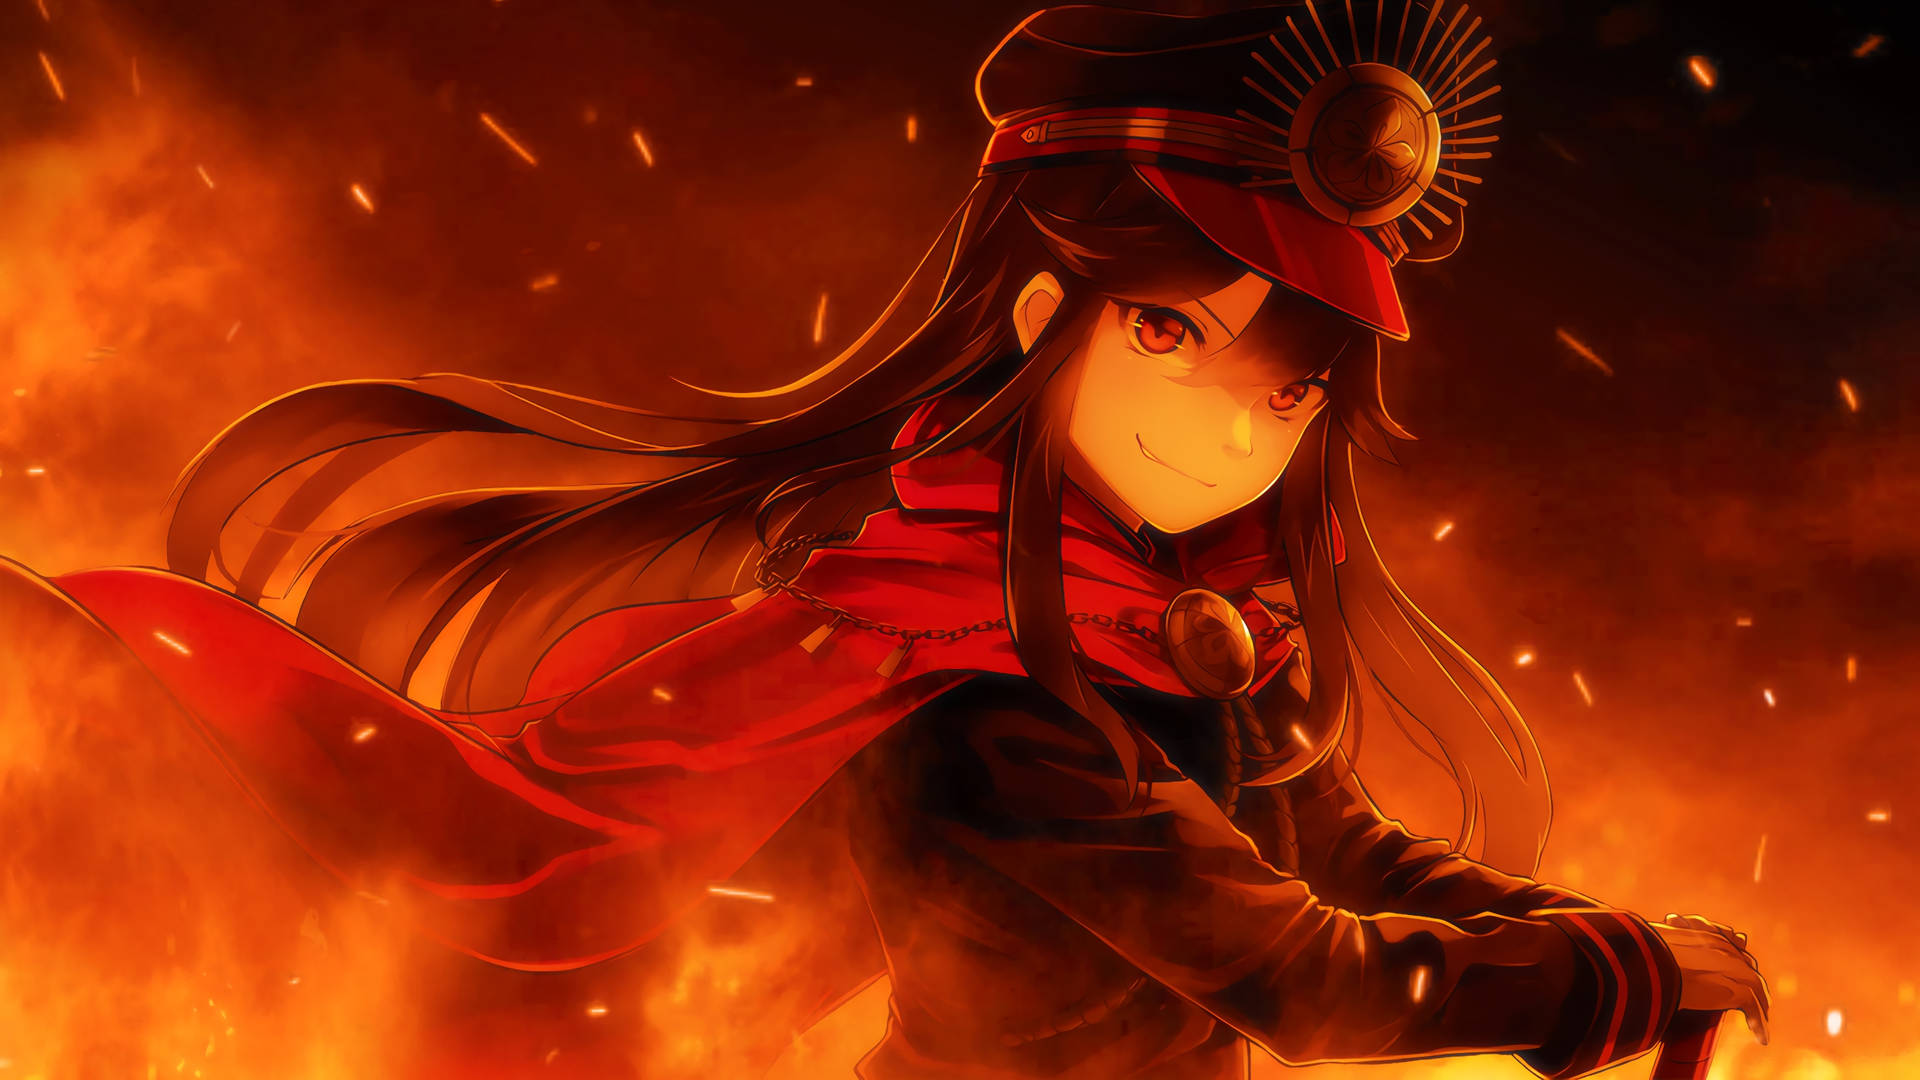 Oda Nobunaga Fire Anime Wallpaper